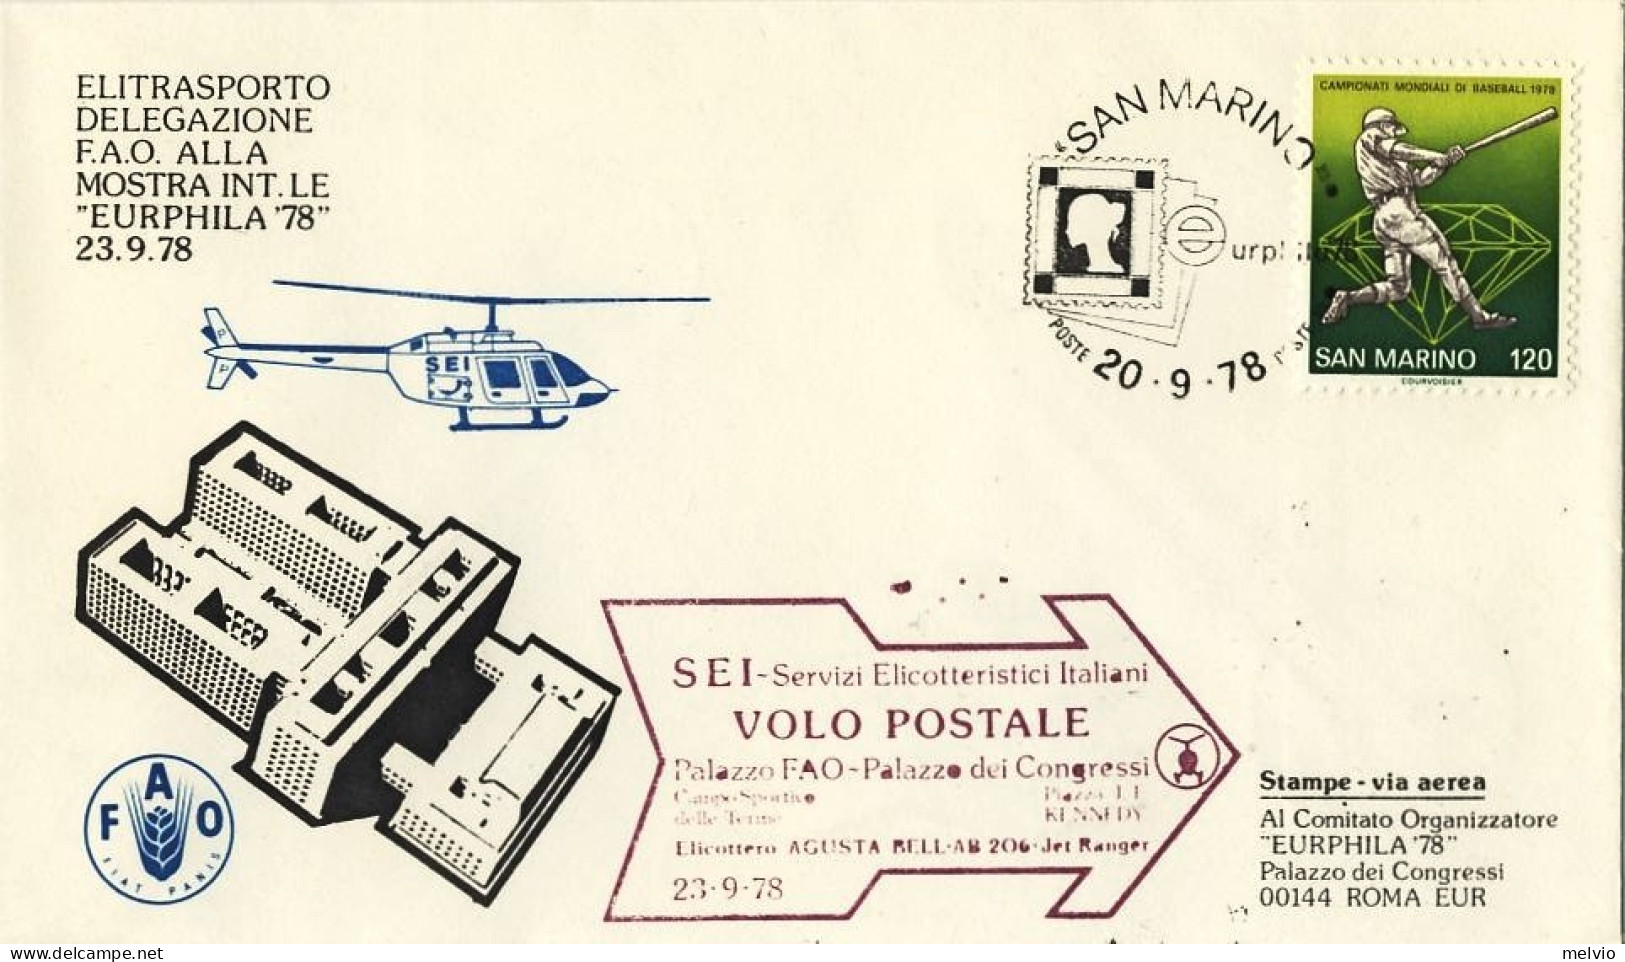 San Marino-1978 Elitrasporto Delegazione F.A.O.alla Mostra Internazionale Eurphi - Airmail